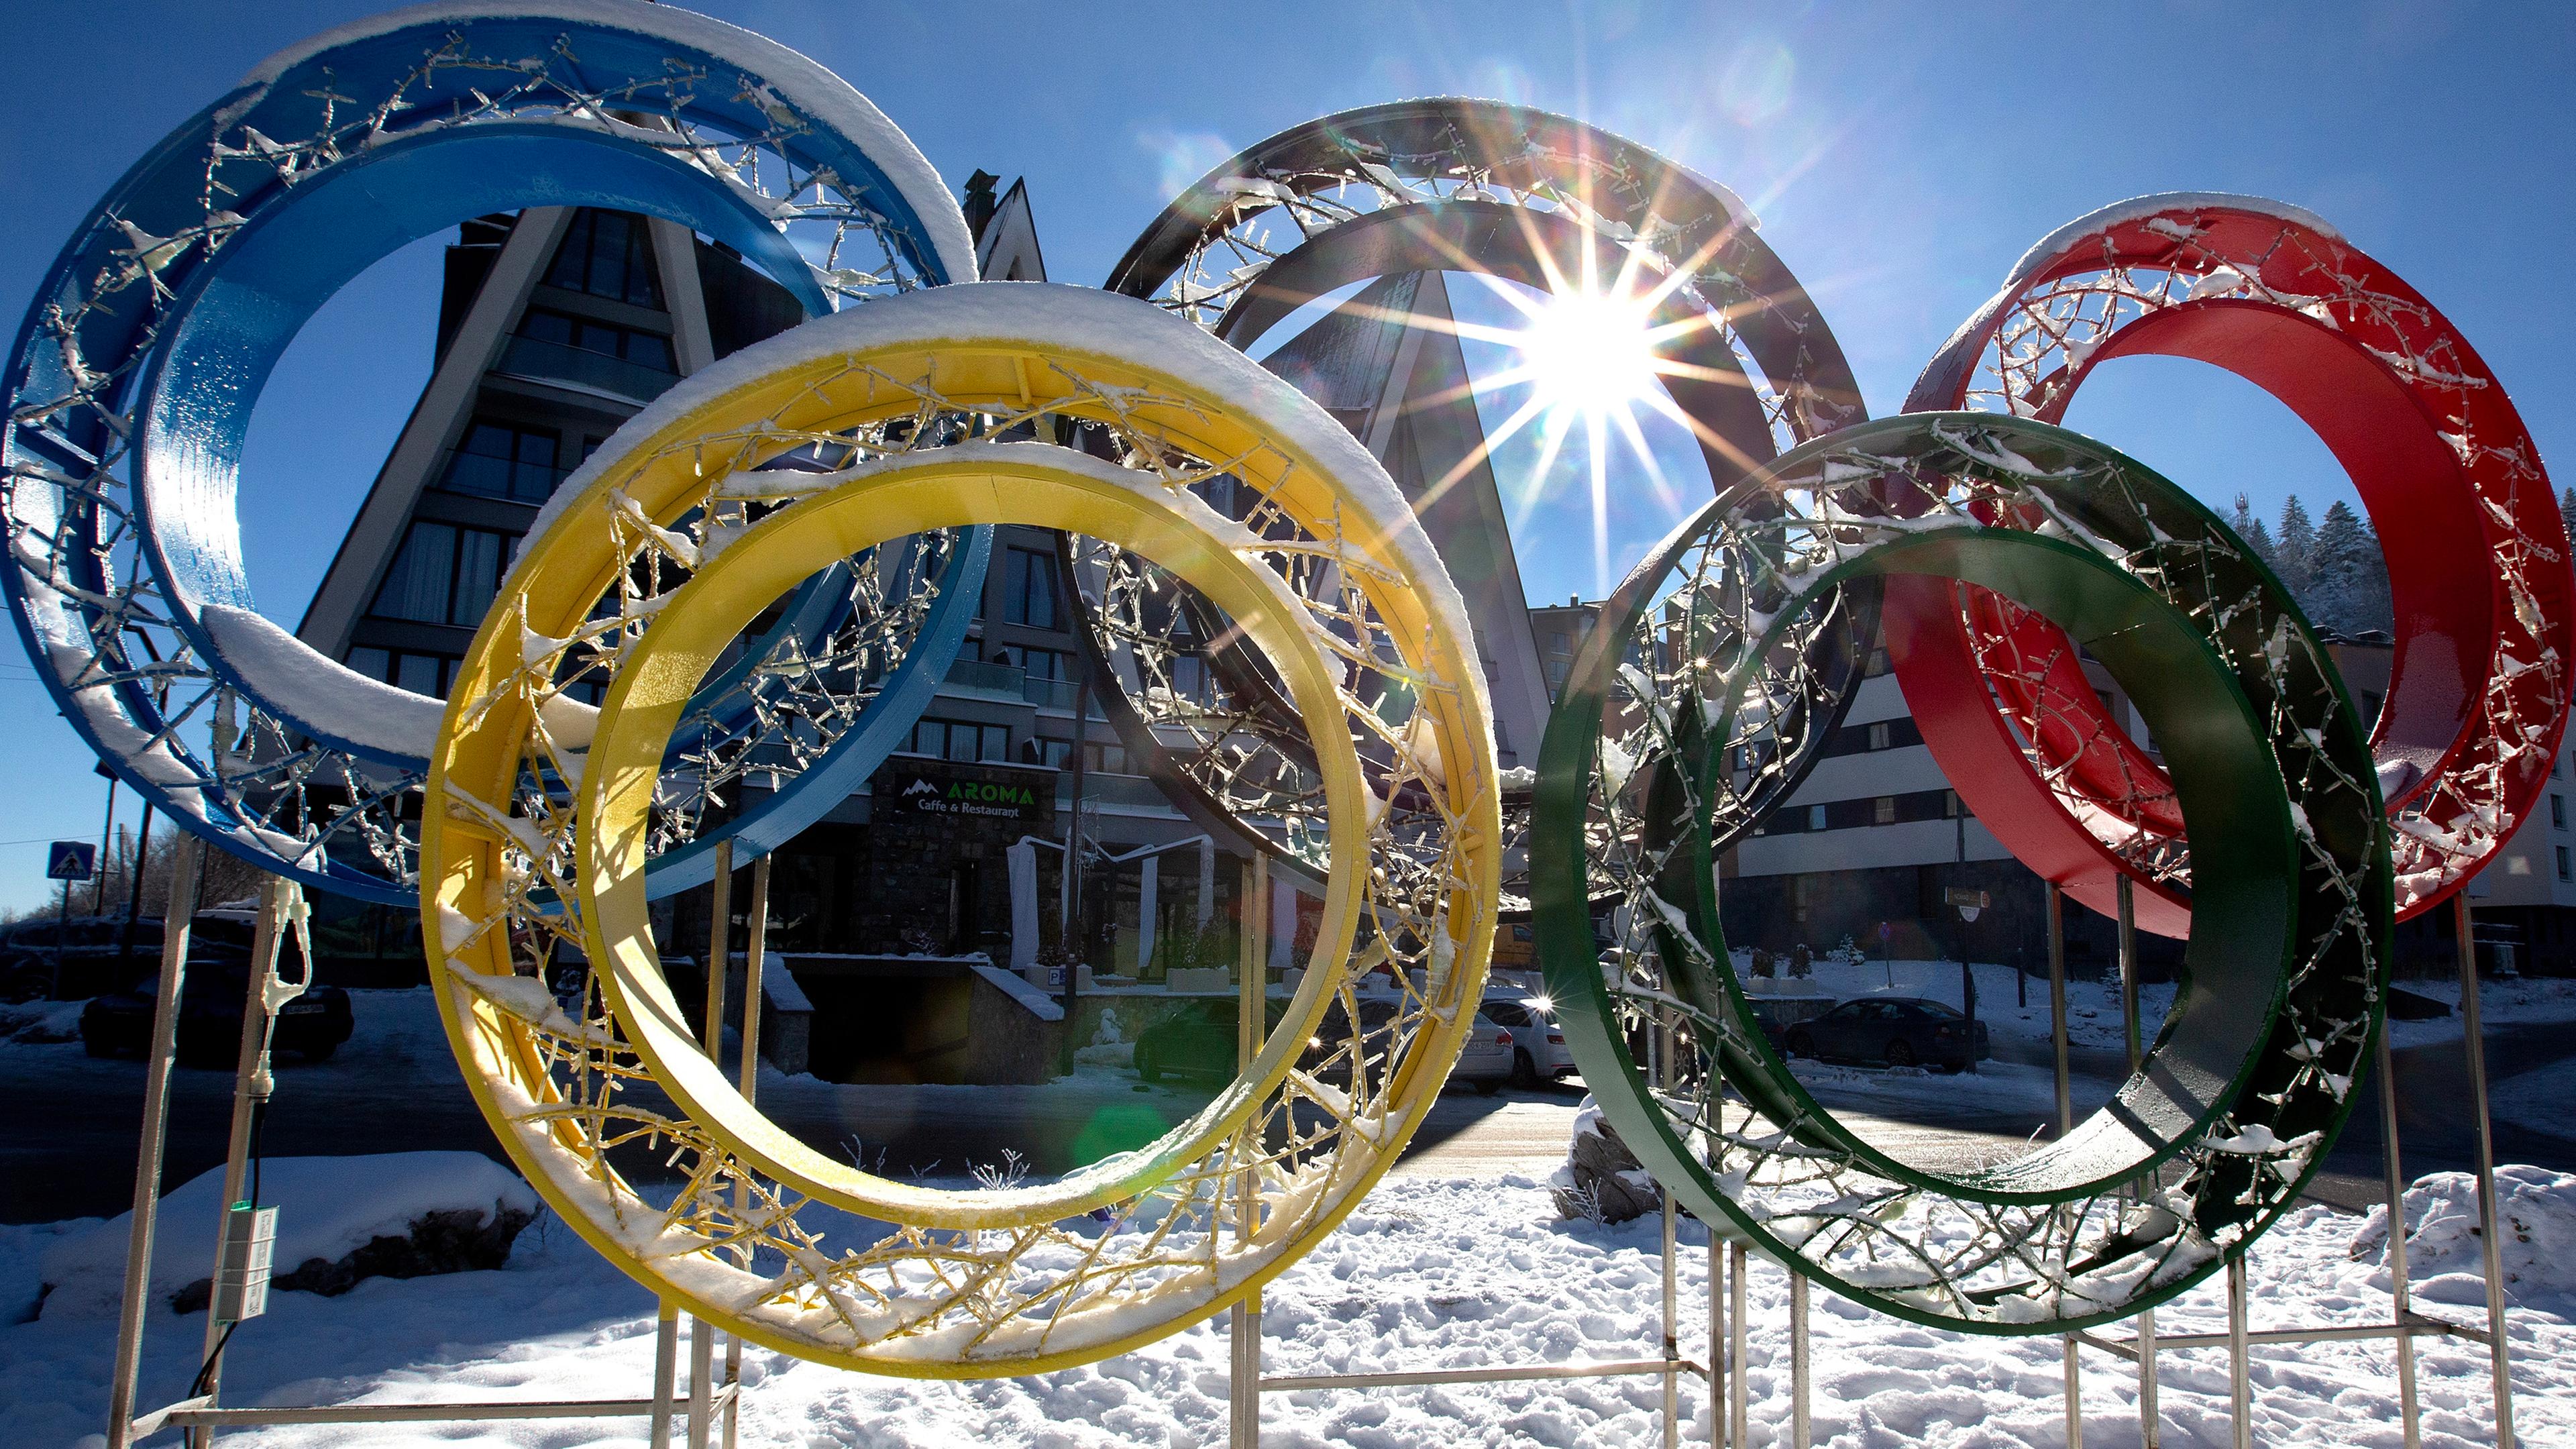 Die olympischen Ringe, die an den vierzigsten Jahrestag der olympischen Winterspiele in Sarajevo erinnern sollen.